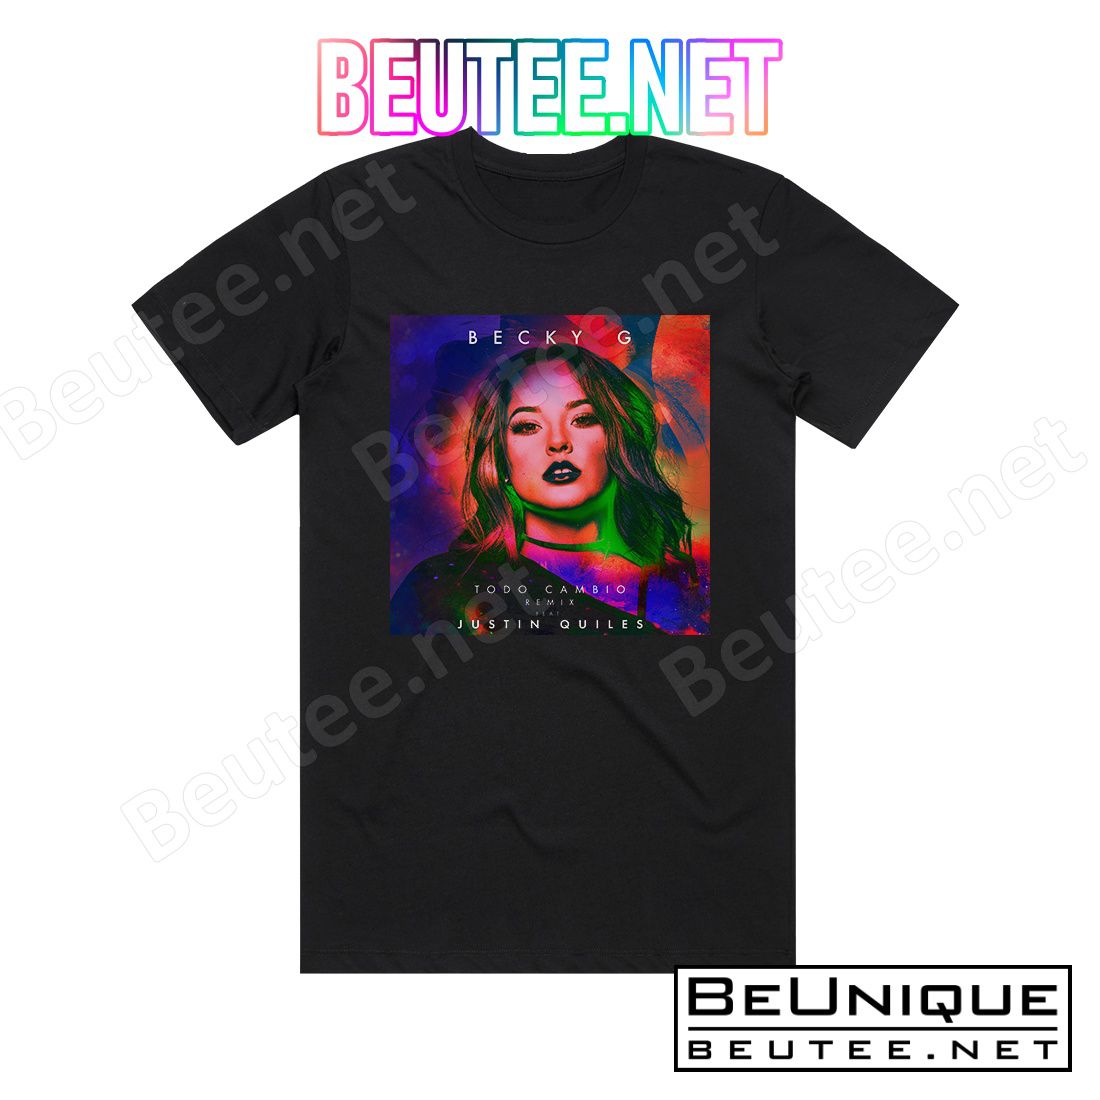 Becky G Todo Cambio Remix 2 Album Cover T-Shirt